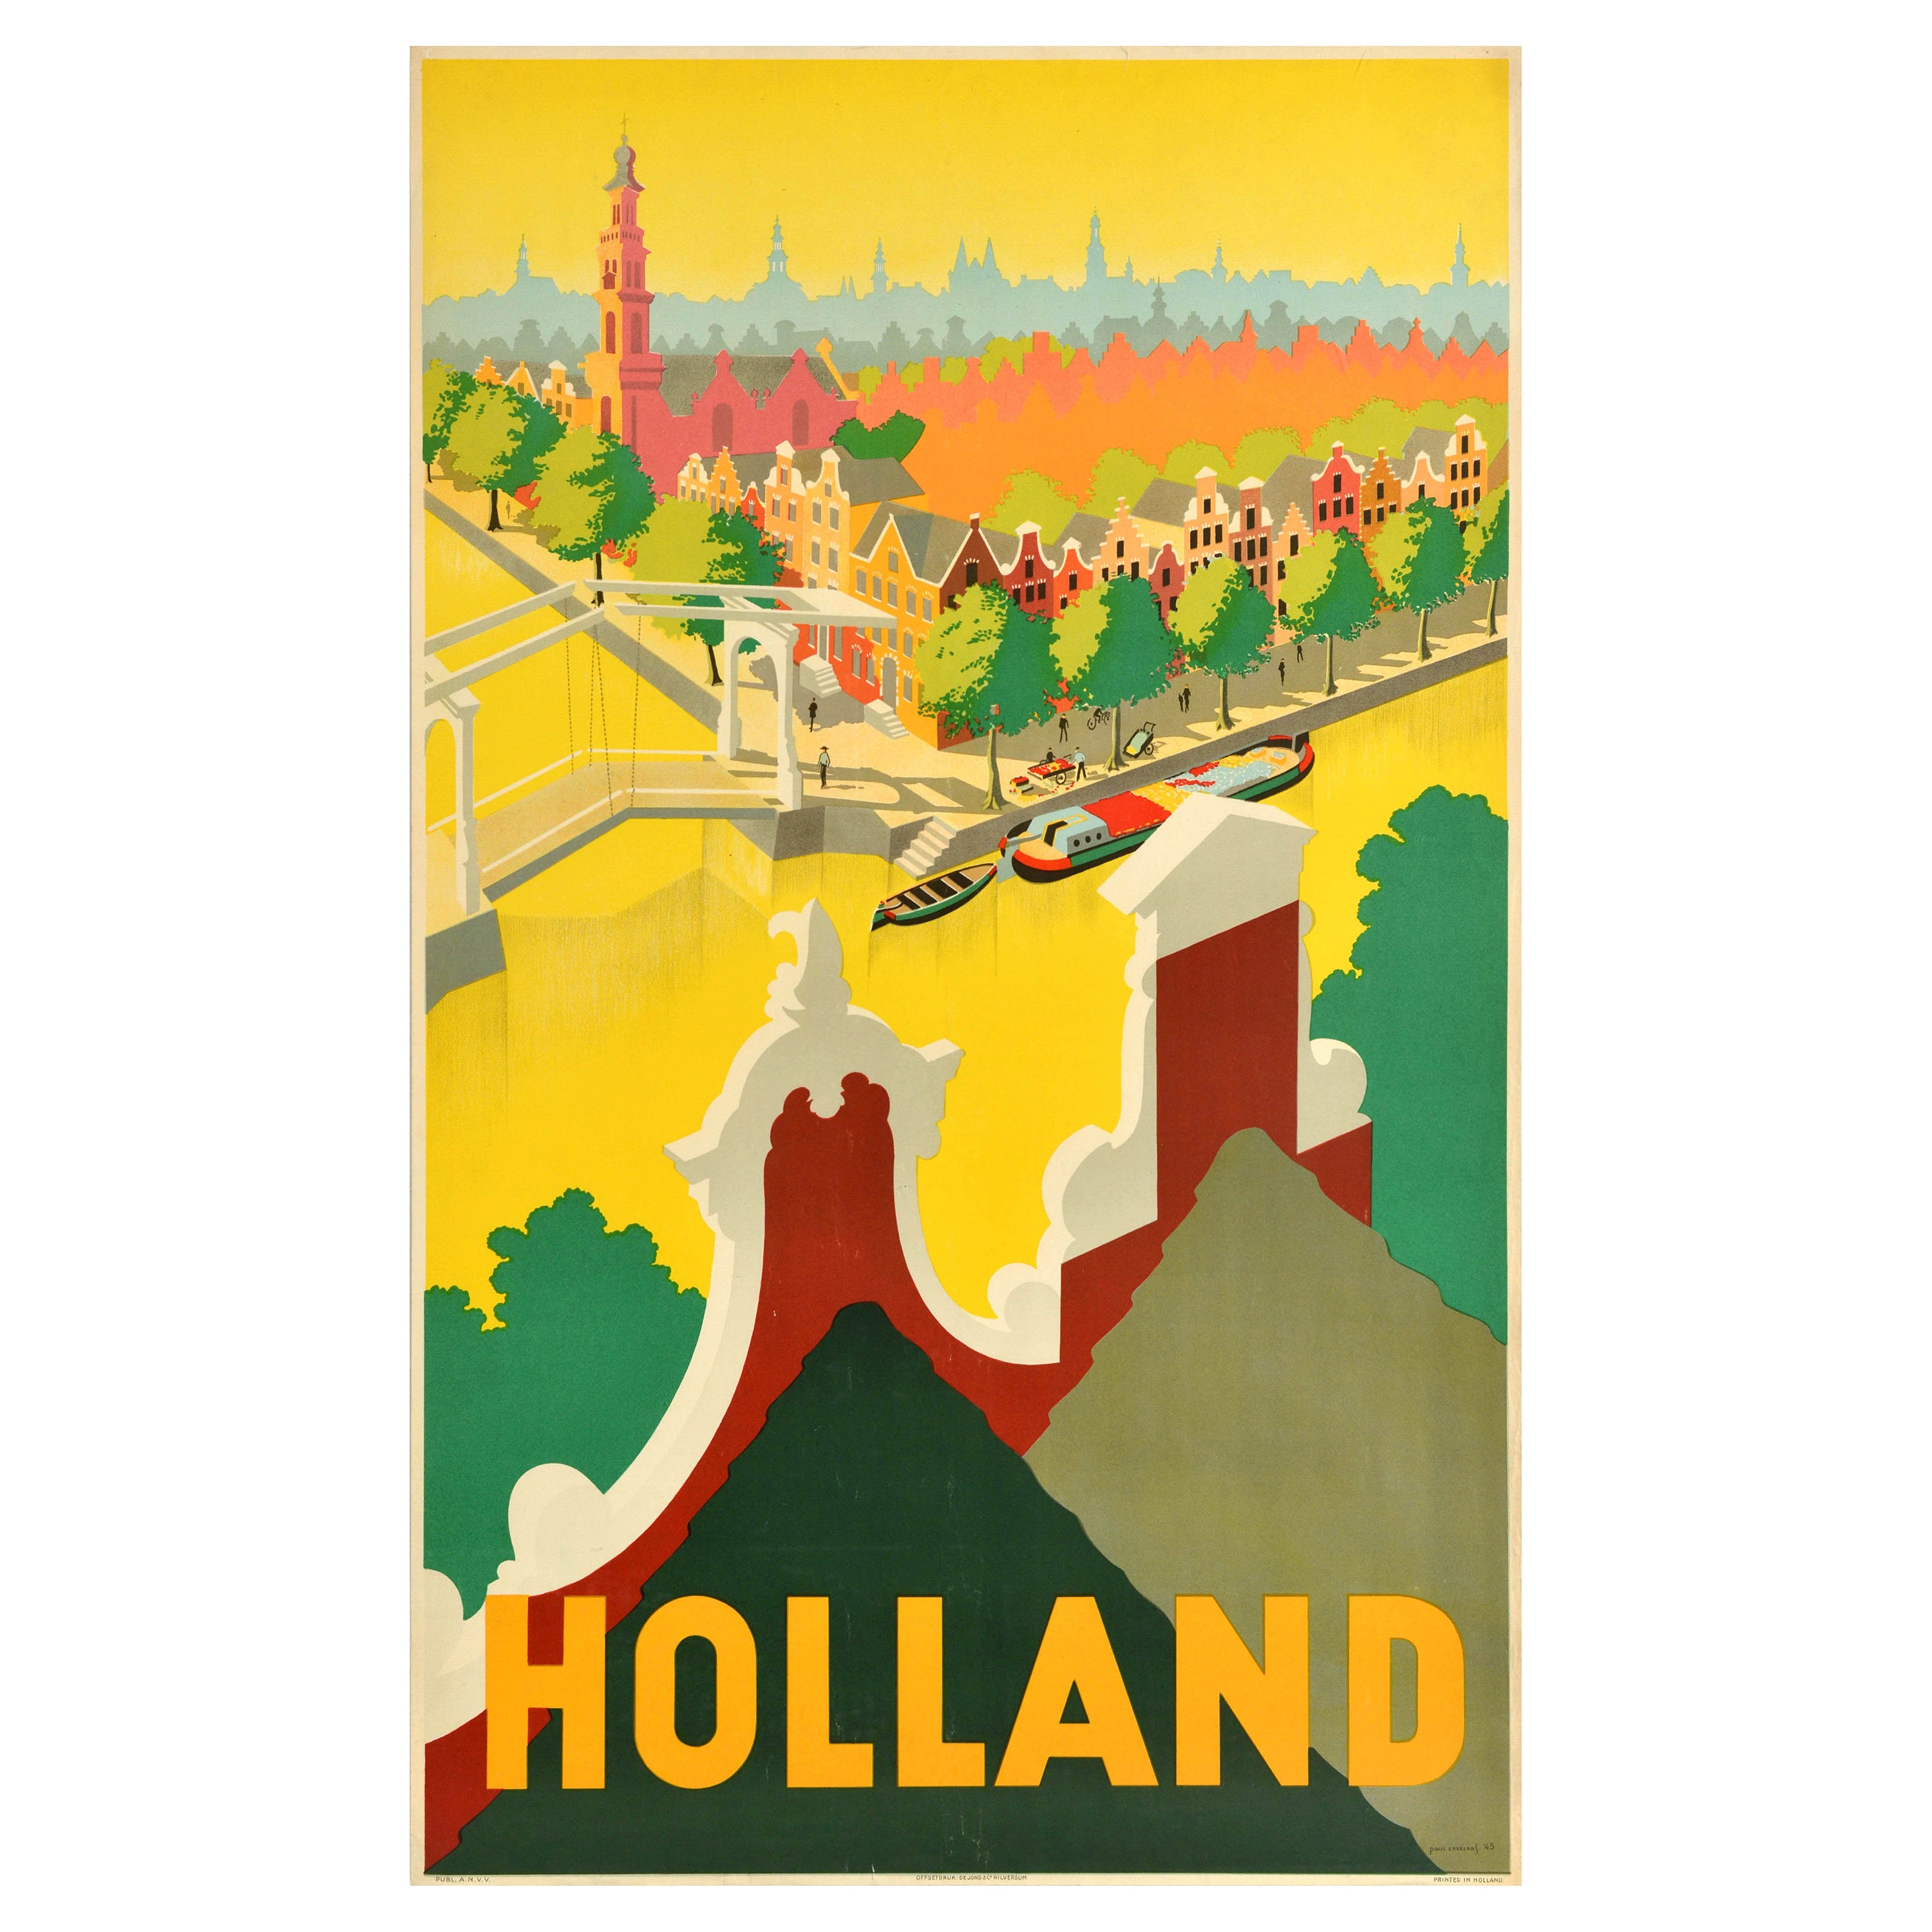 Original Vintage Travel Poster Holland River Canal Dutch Houses Netherlands Art